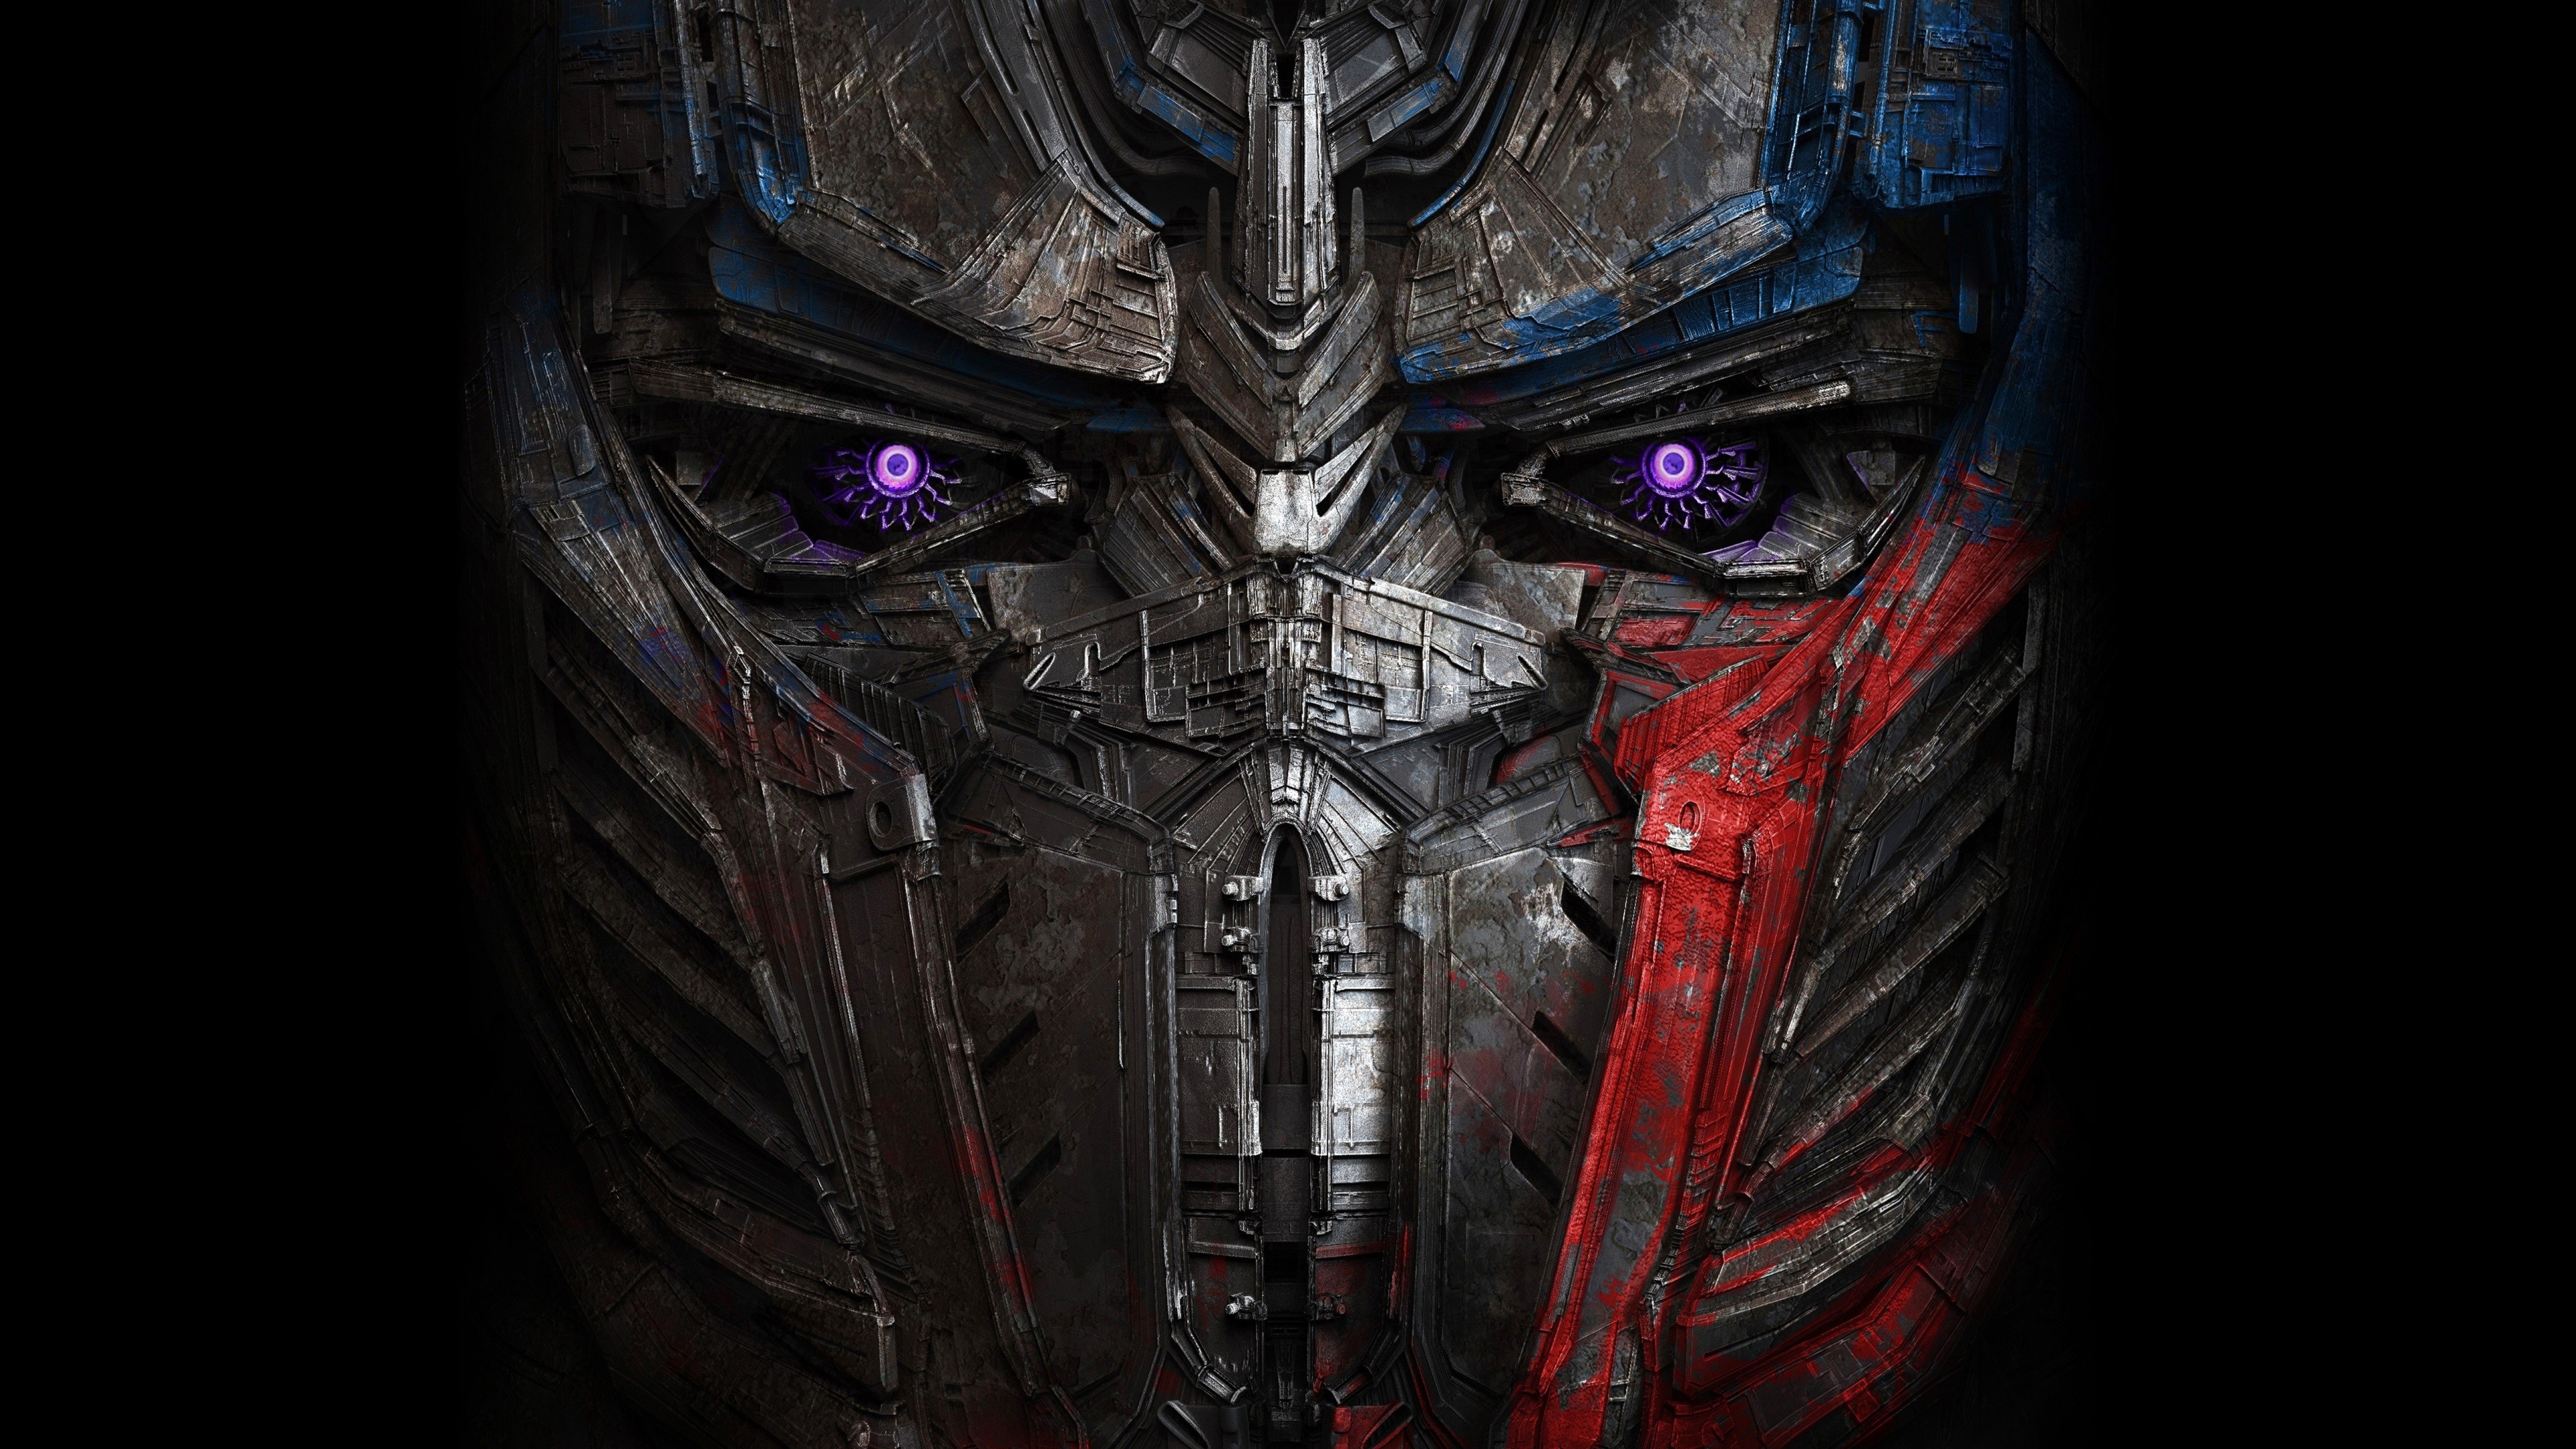 Optimus Prime, Surreal, Digital art, Transformers Wallpaper